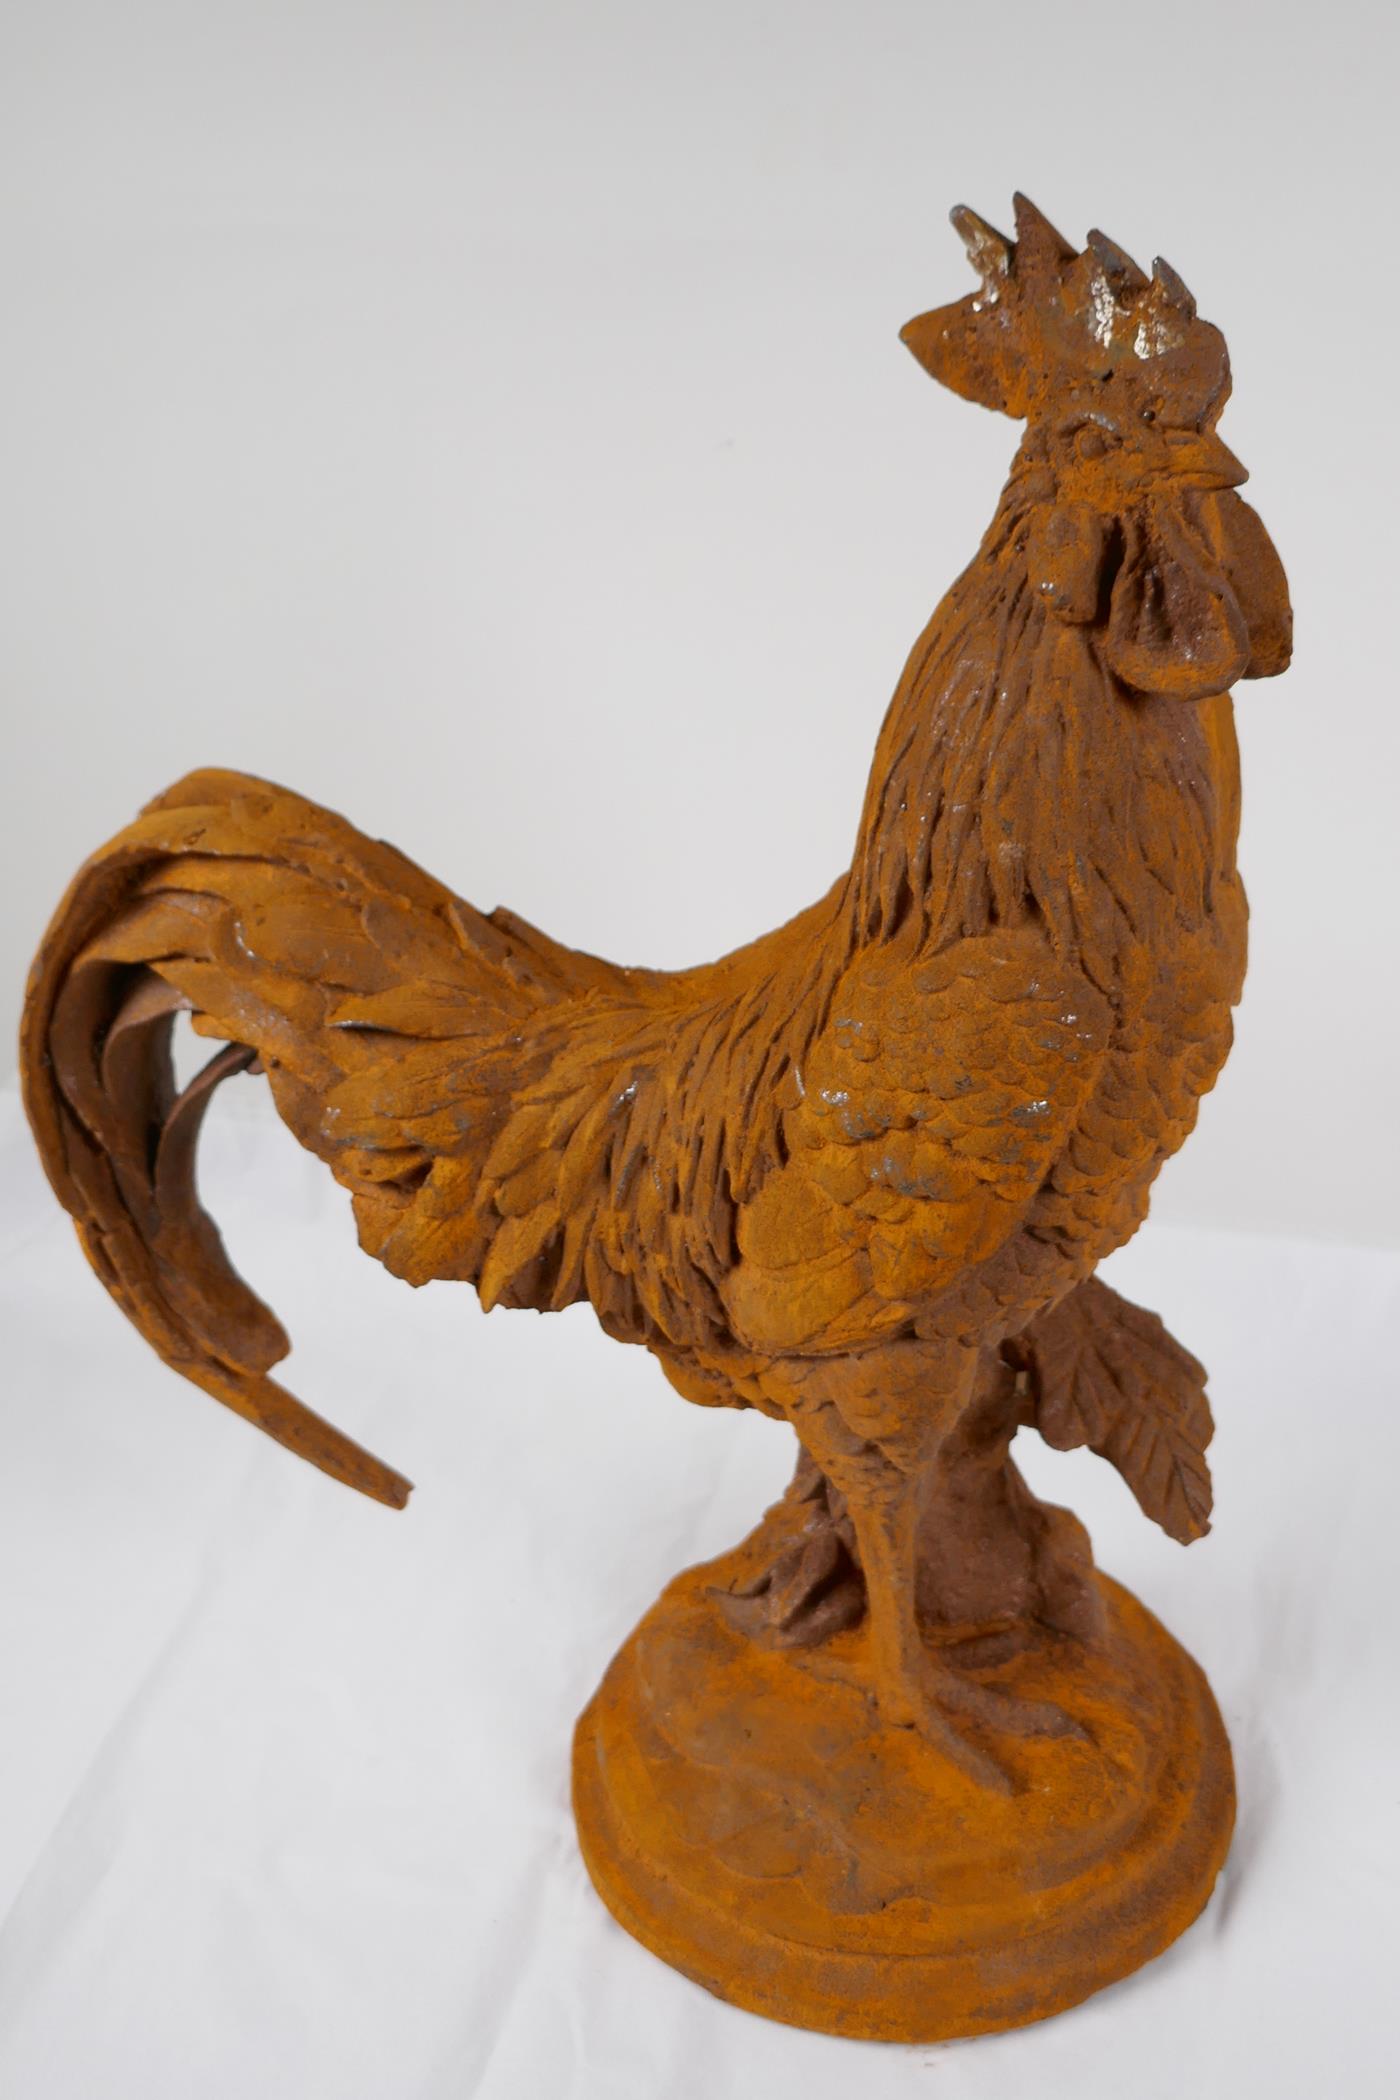 A cast iron garden figure of a cockerel, 17" high